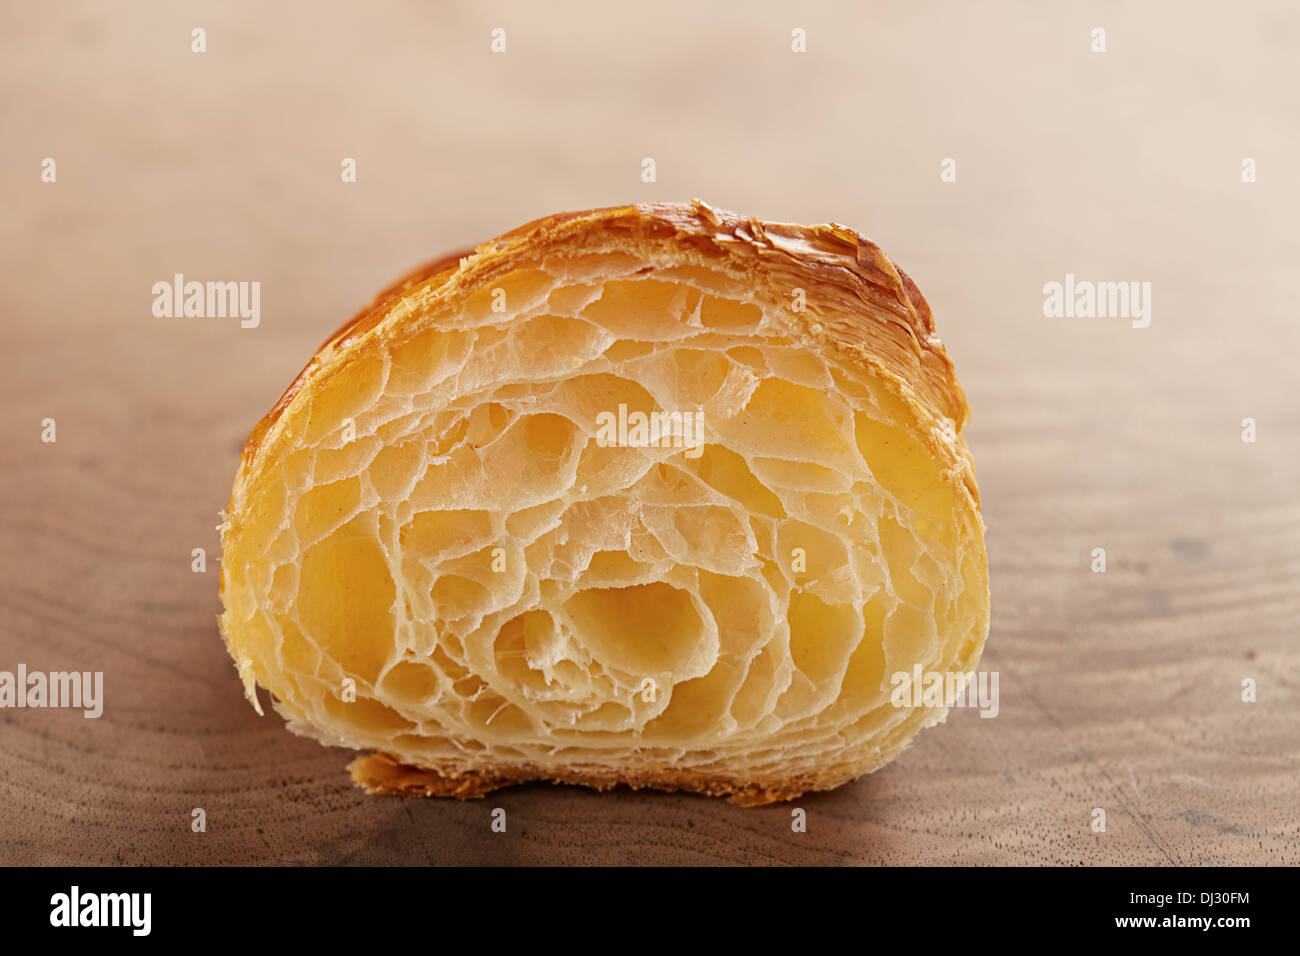 L'intérieur français croissant au beurre sur table en bois Banque D'Images